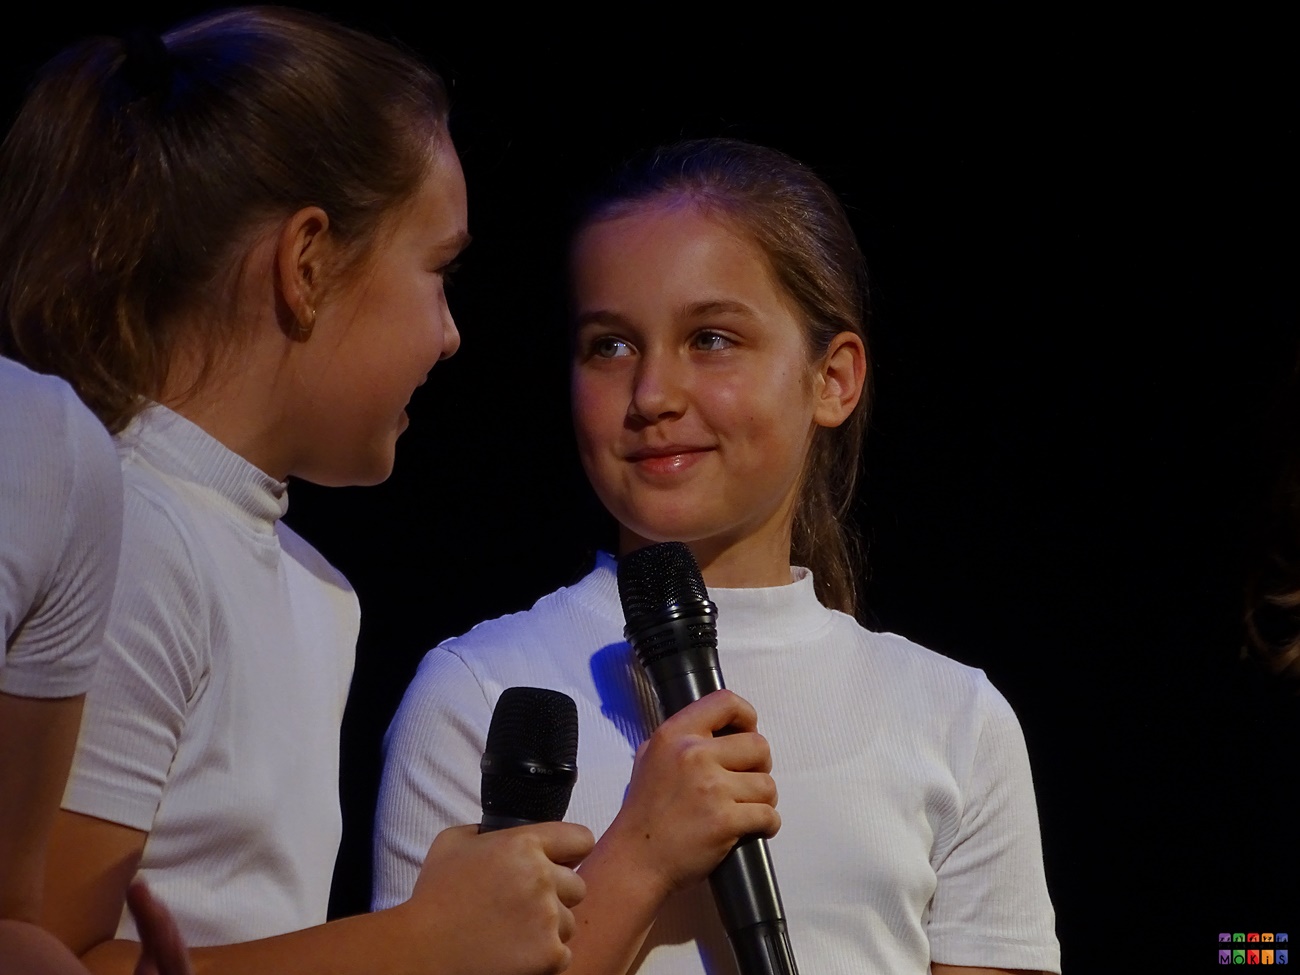 Zdjęcie przedstawia dwie dziewczyny z mikrofonem w ręku patrzące na siebie.